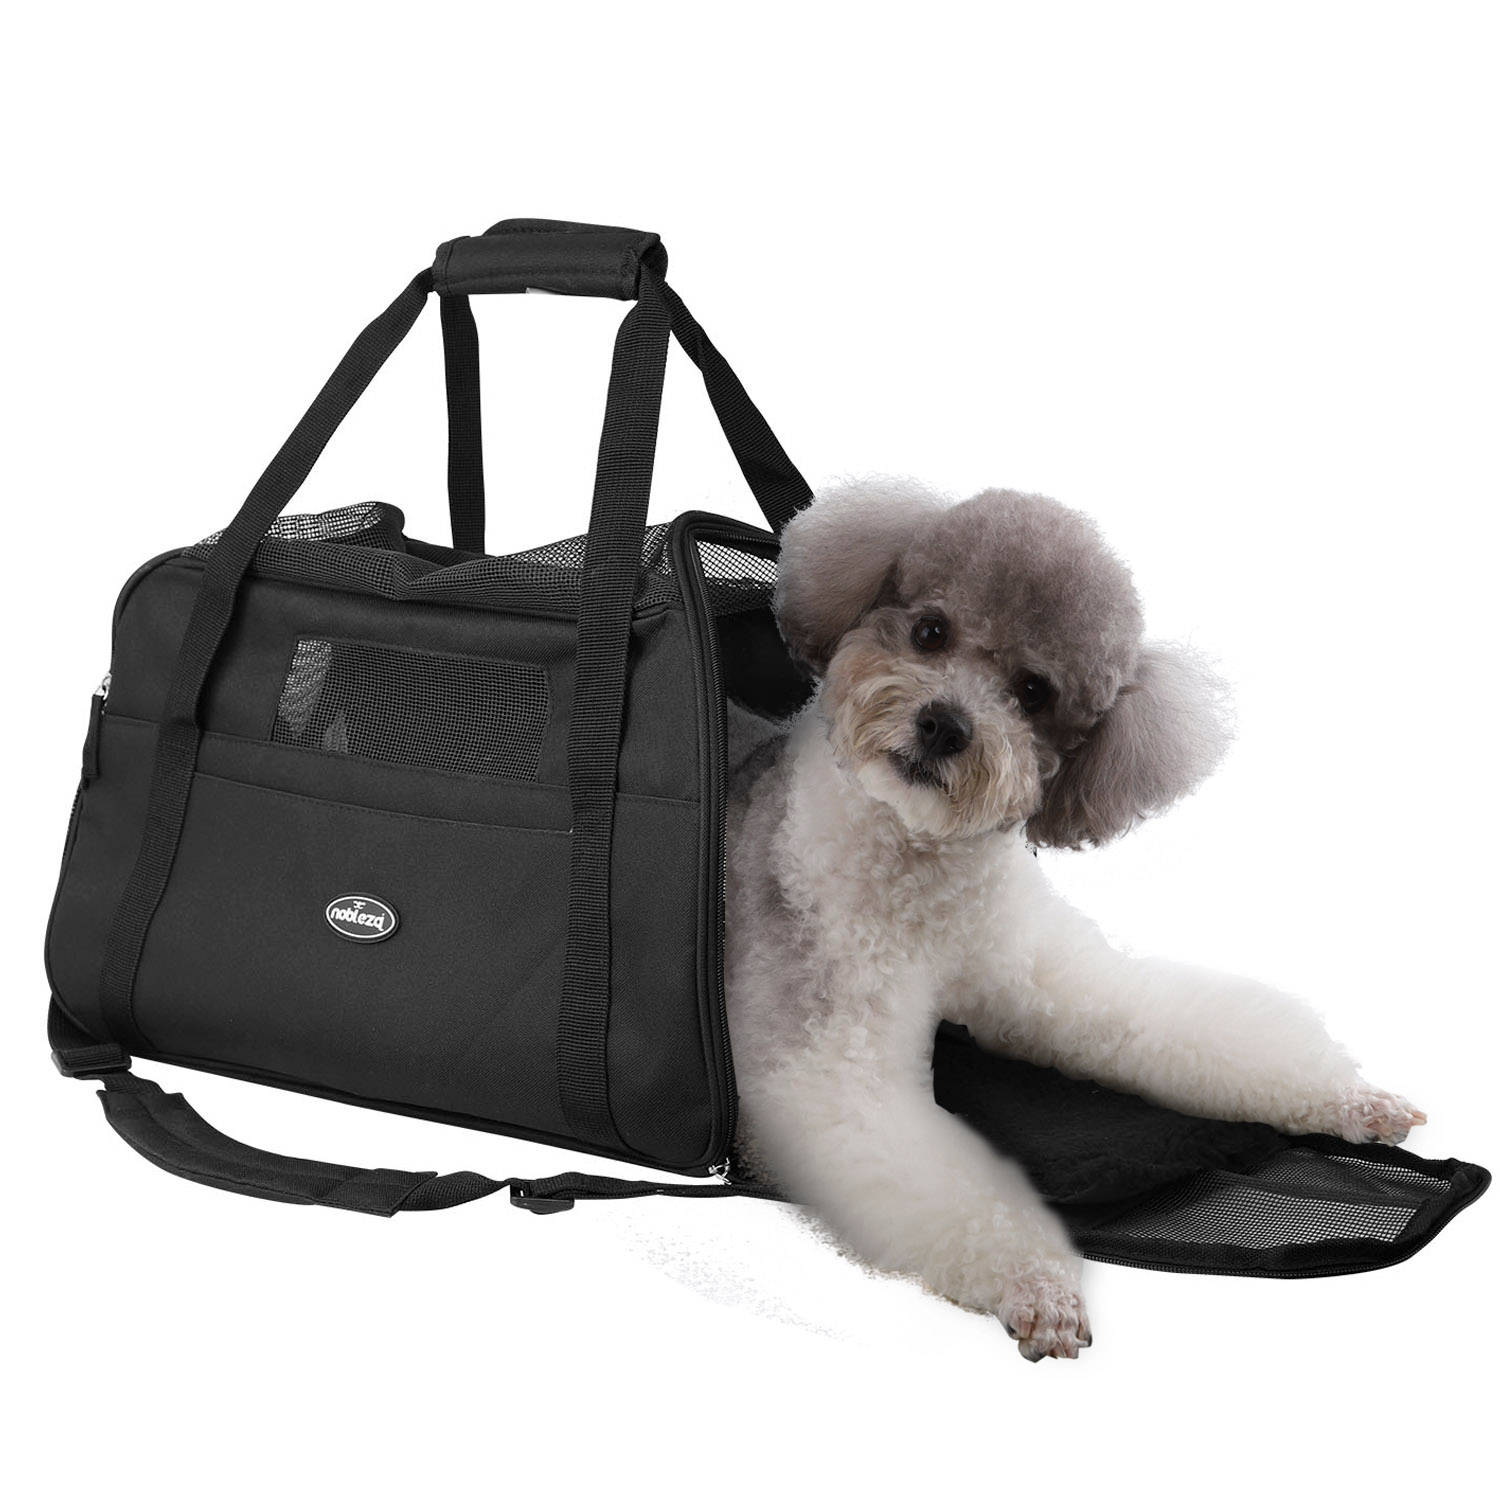 Nobleza Reistas voor Huisdieren 41JPH - Transport tas - Dieren draagtas - L43 x B23 x cm - M - Zwart | Blokker